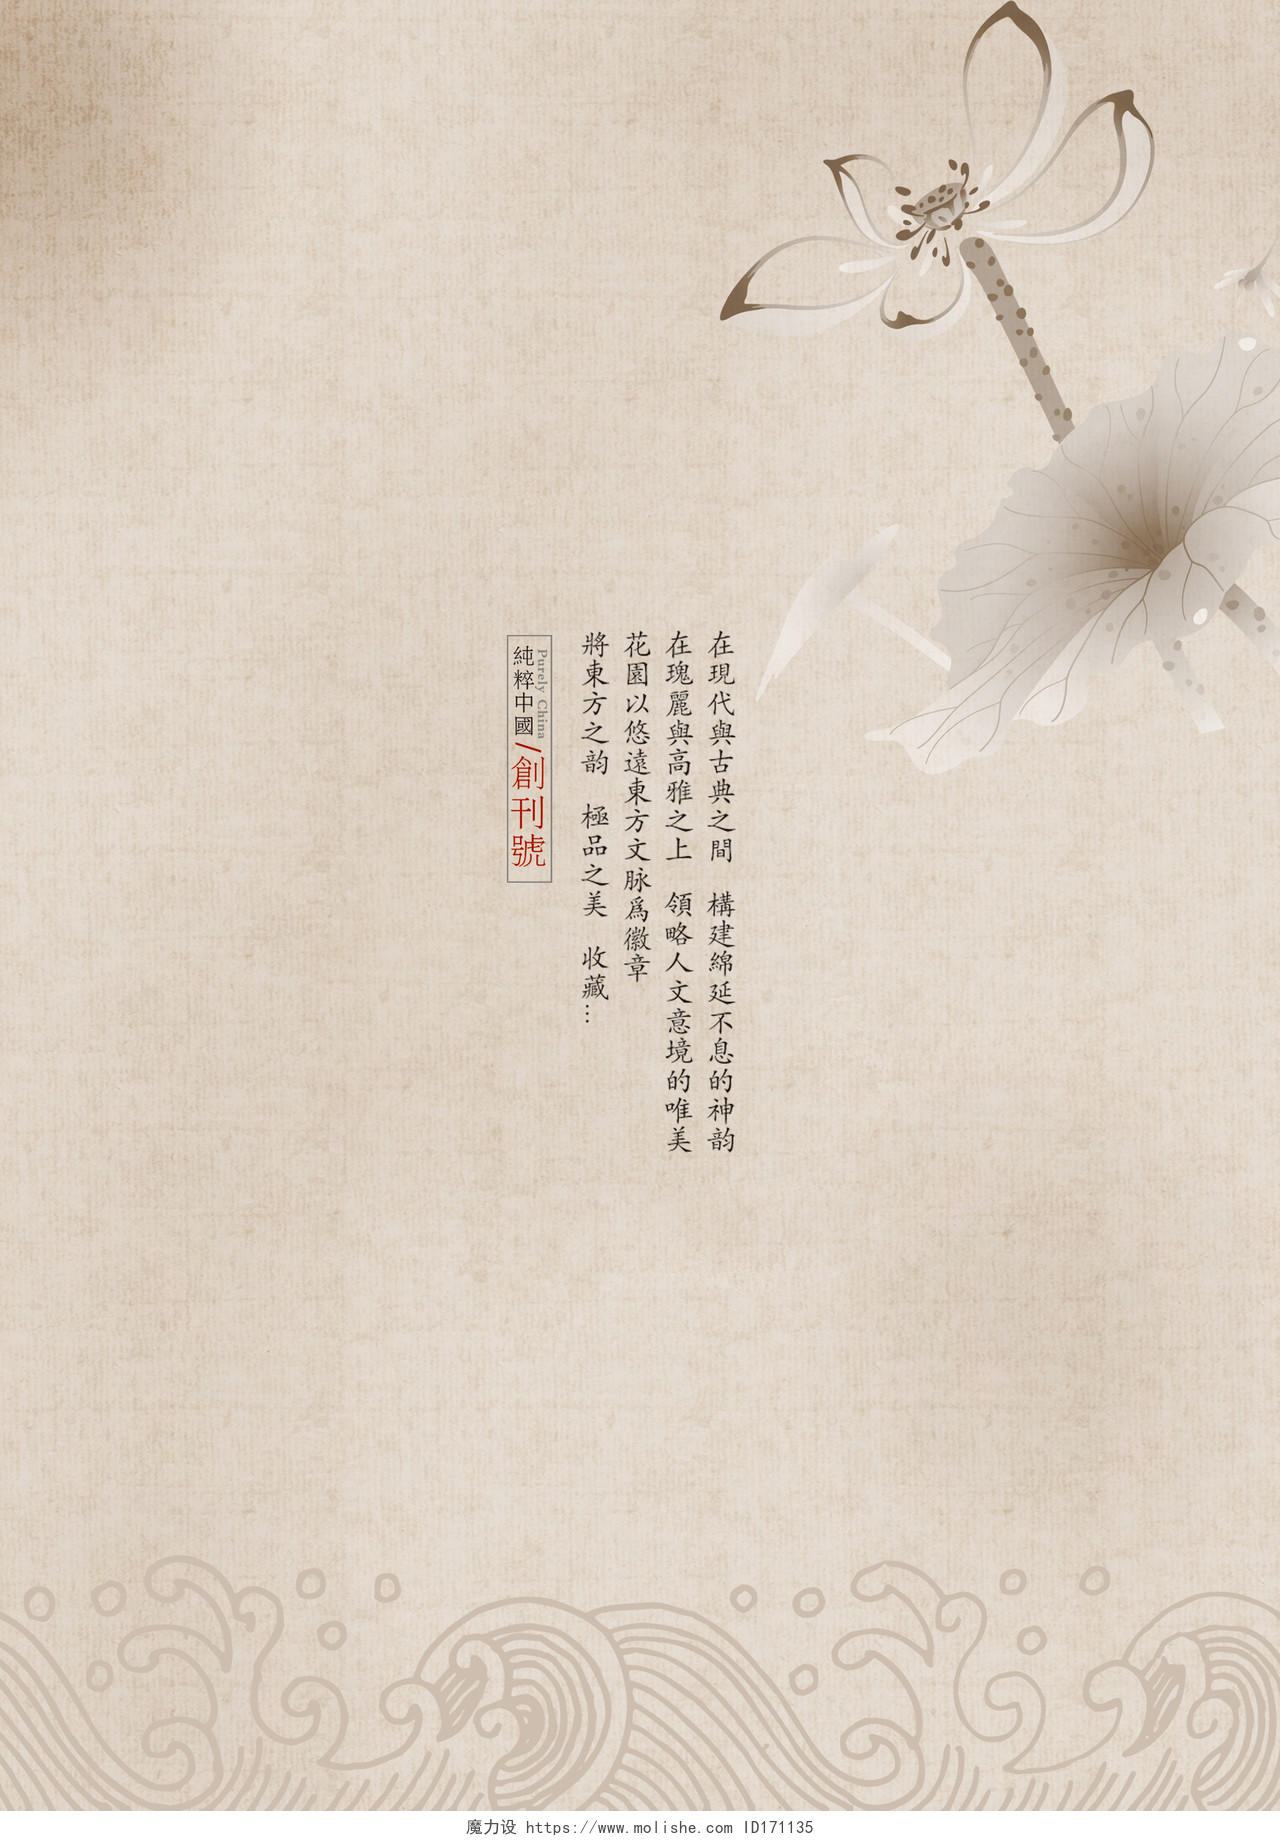 中国风中国情宣传画册封面设计